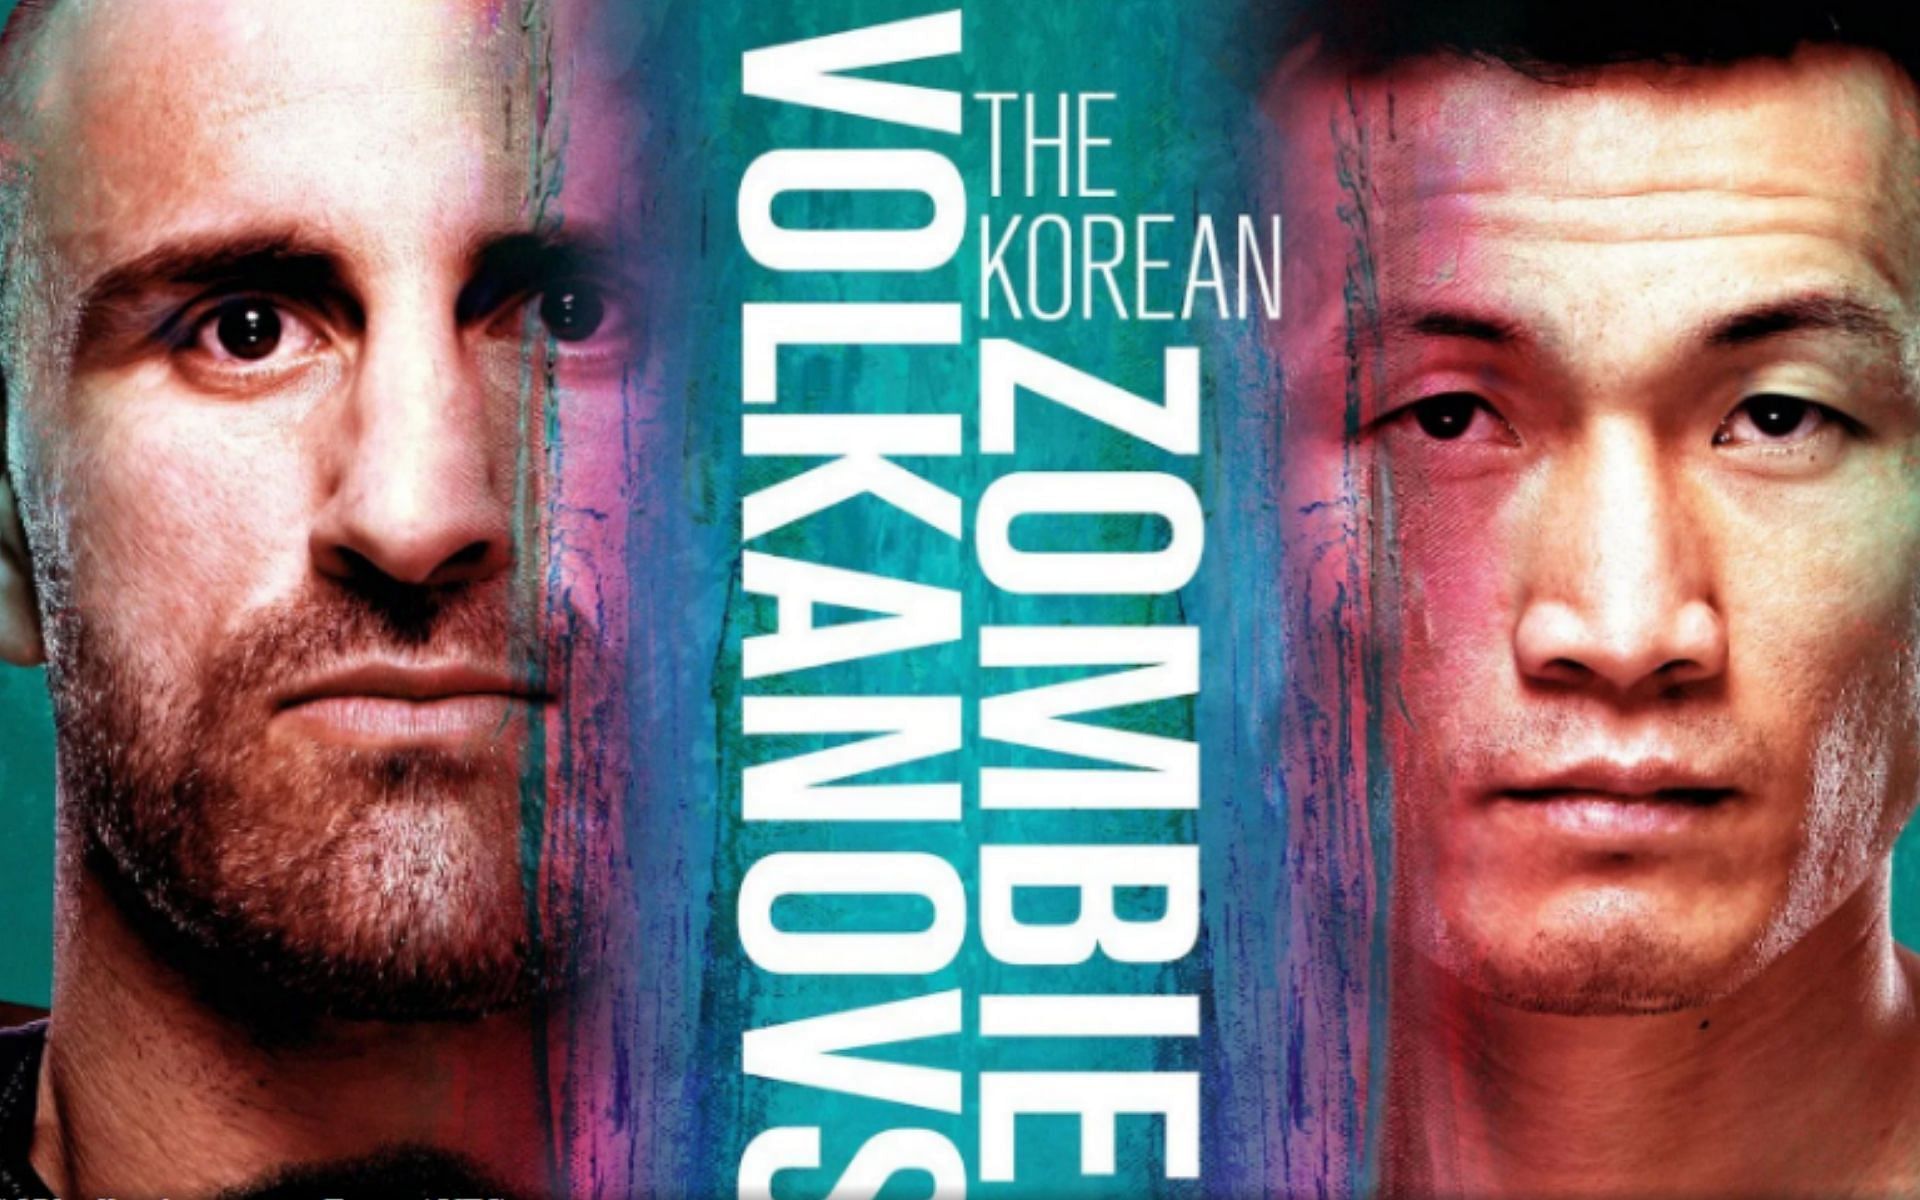 Volkanovski vs. The Korean Zombie poster [Image courtesy: @ufc via Twitter]